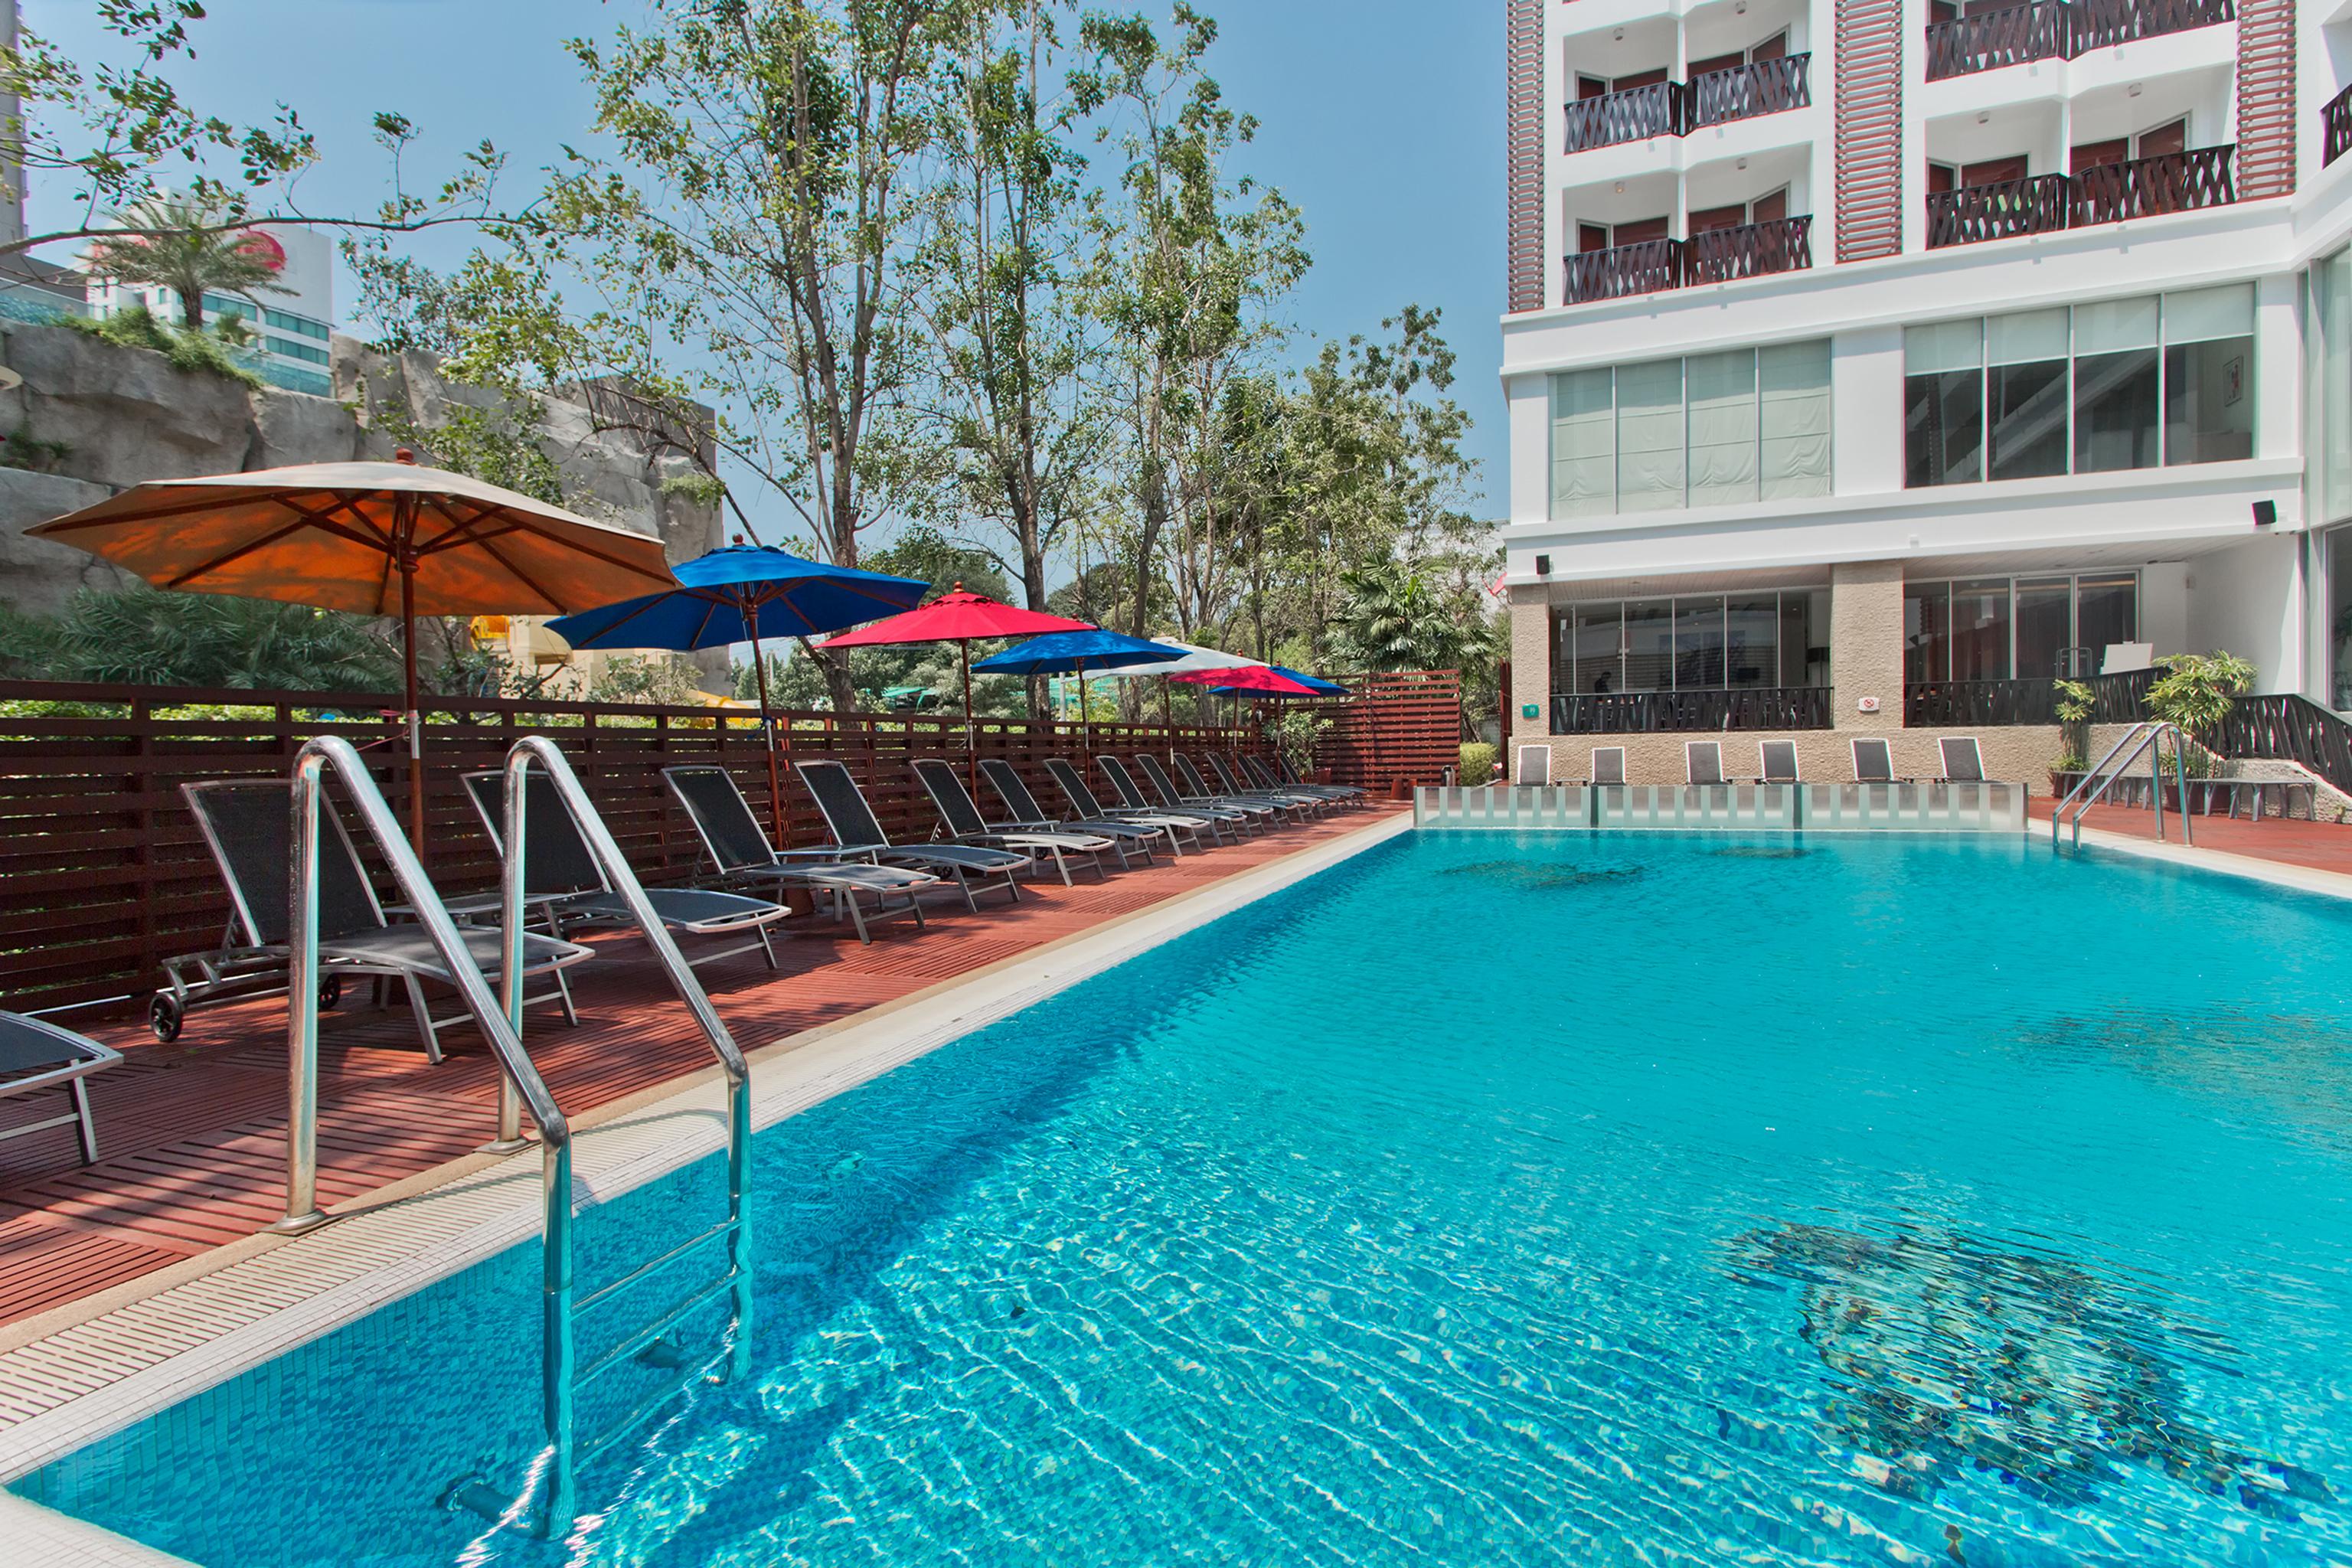 Hotel ibis Pattaya